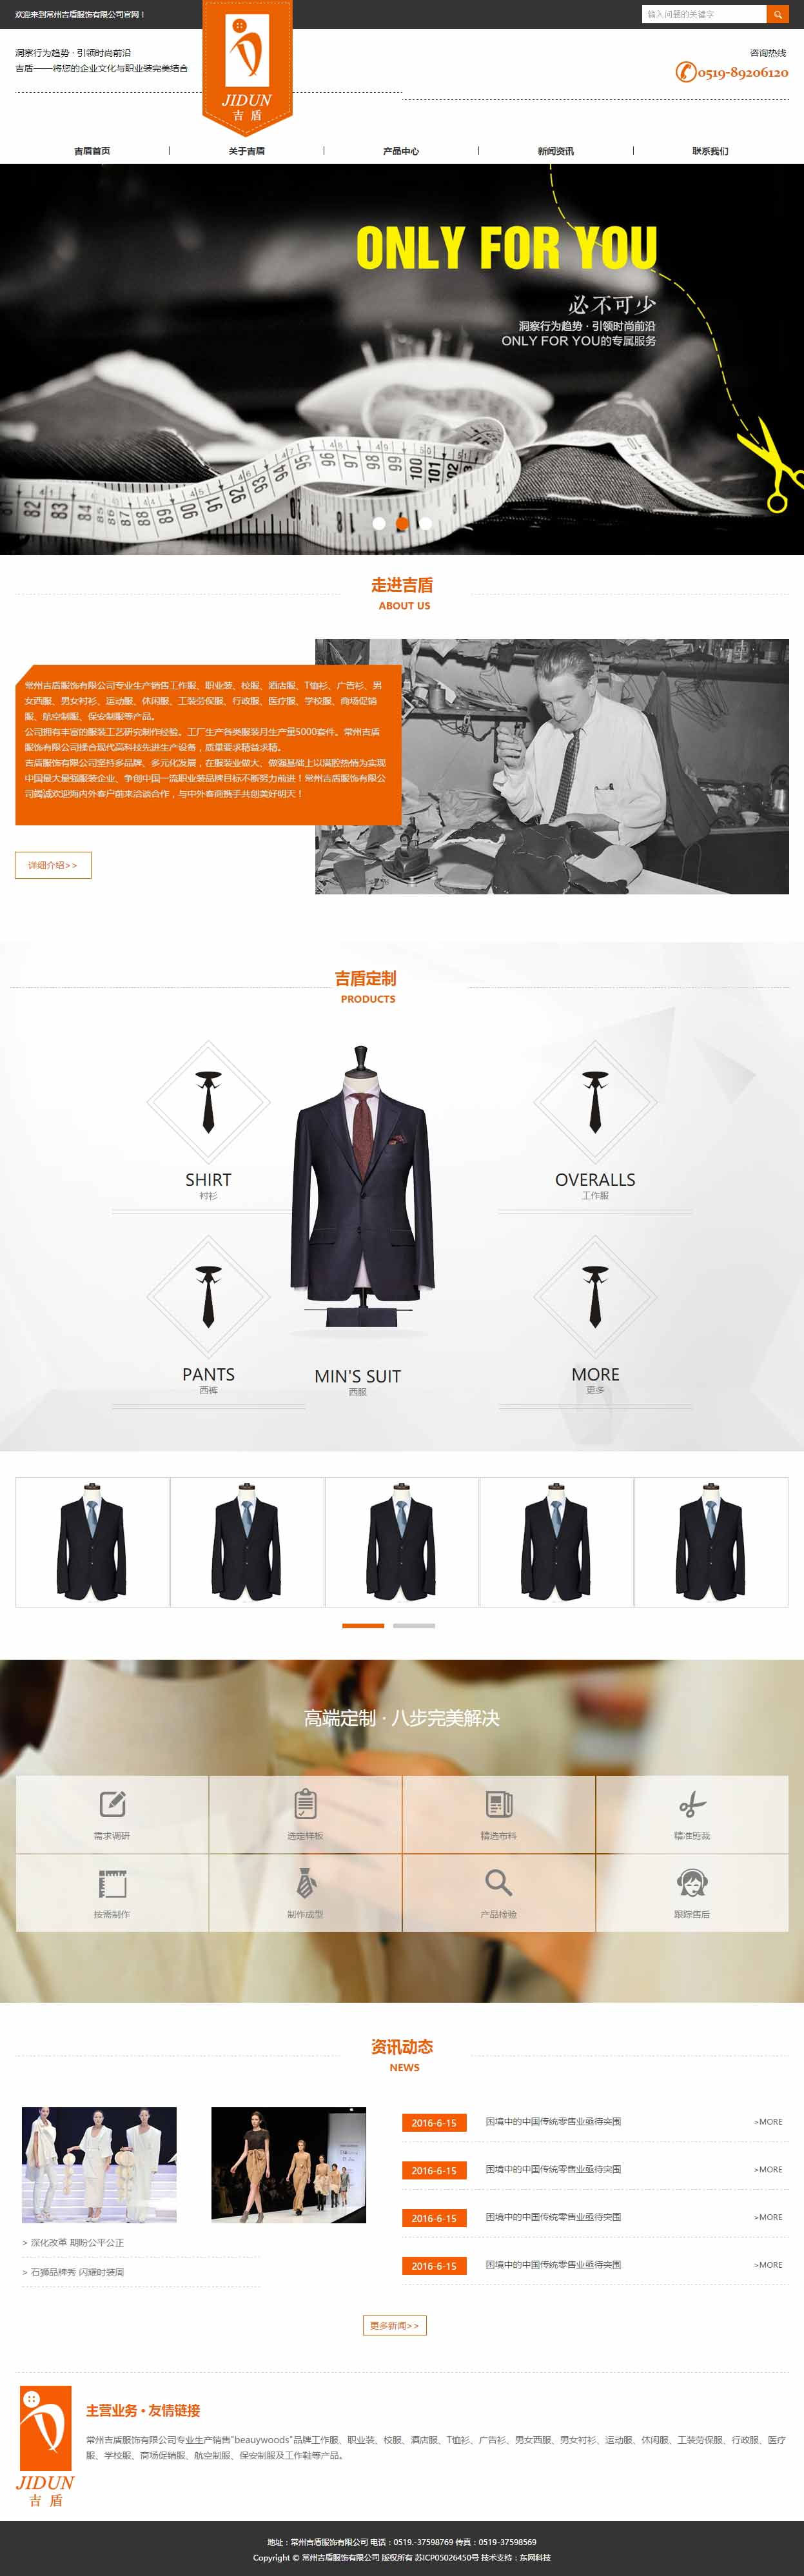 高端大气的服装定制企业网站模板下载